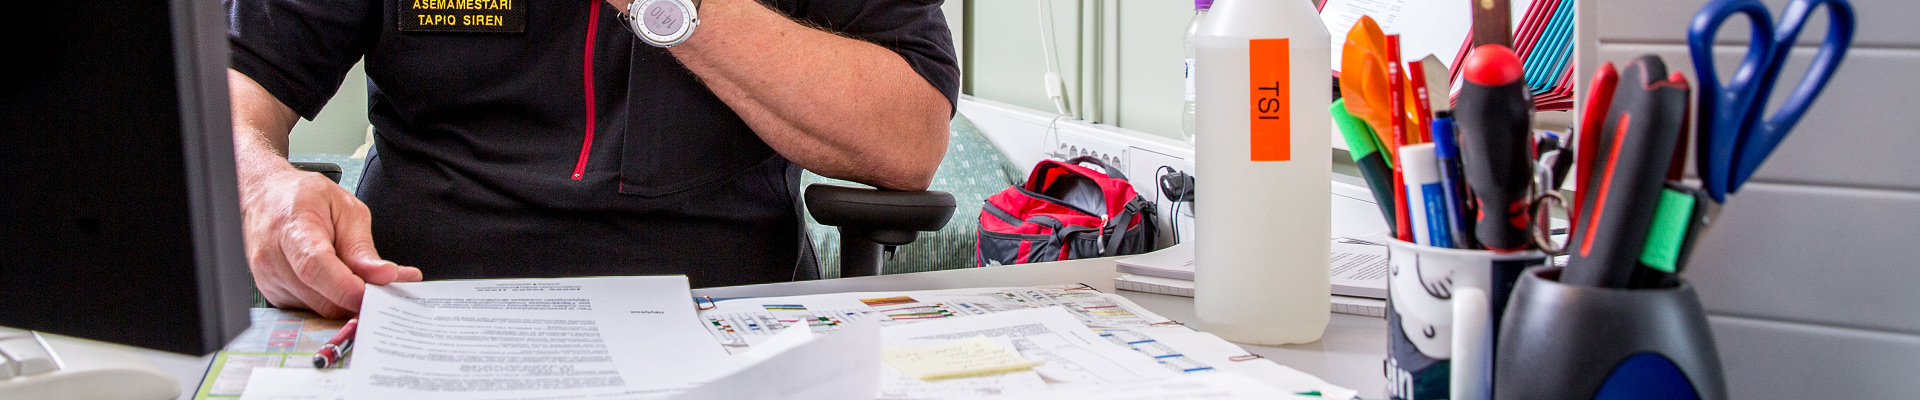 Pelastaja tutkimassa työpöydän ääressä papereita